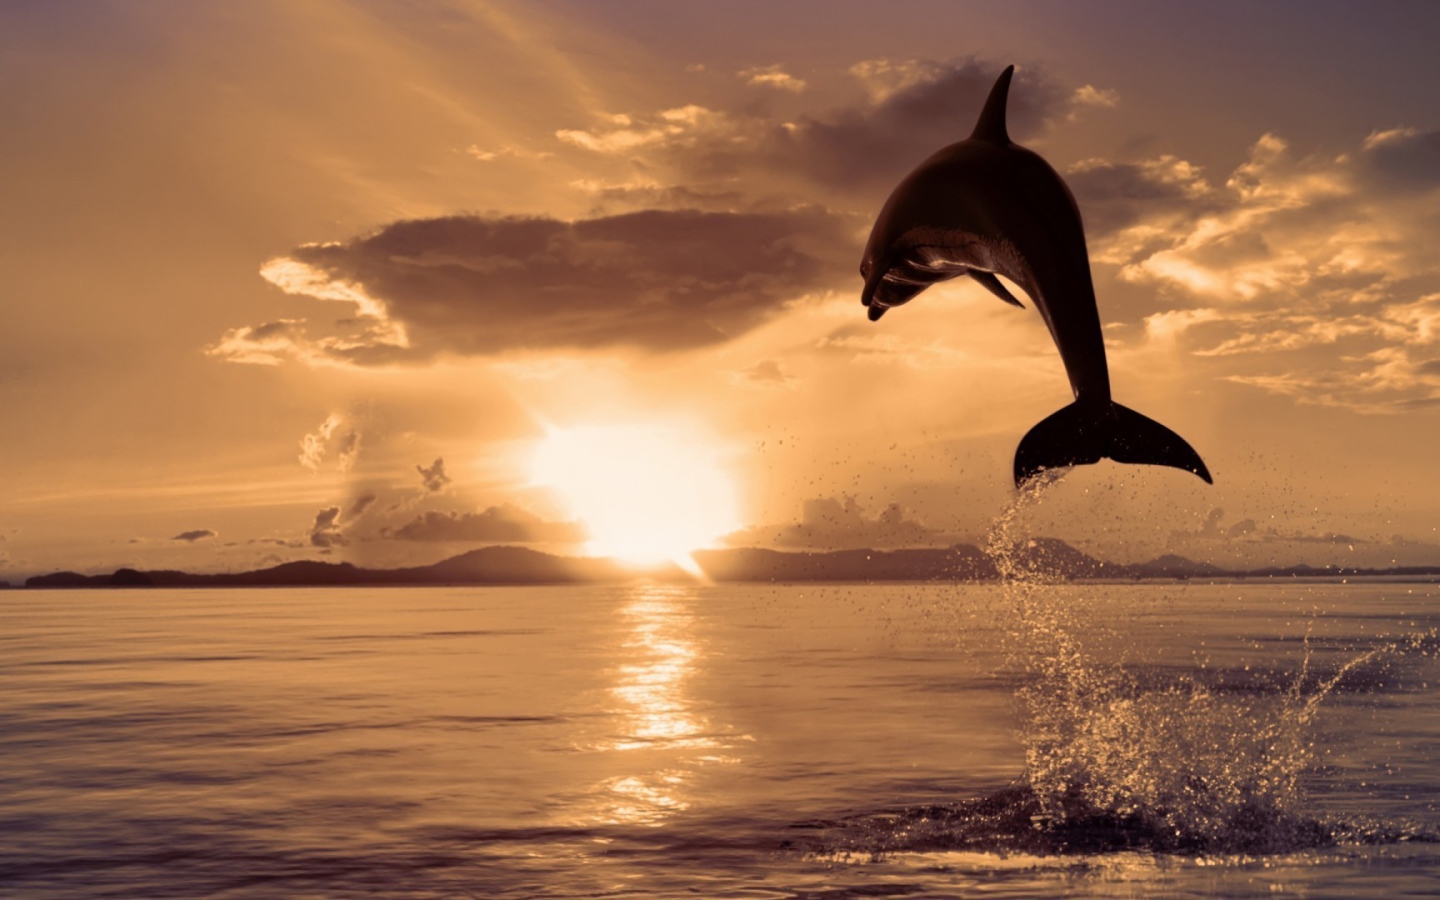 Дельфин высоко выпрыгнул из воды